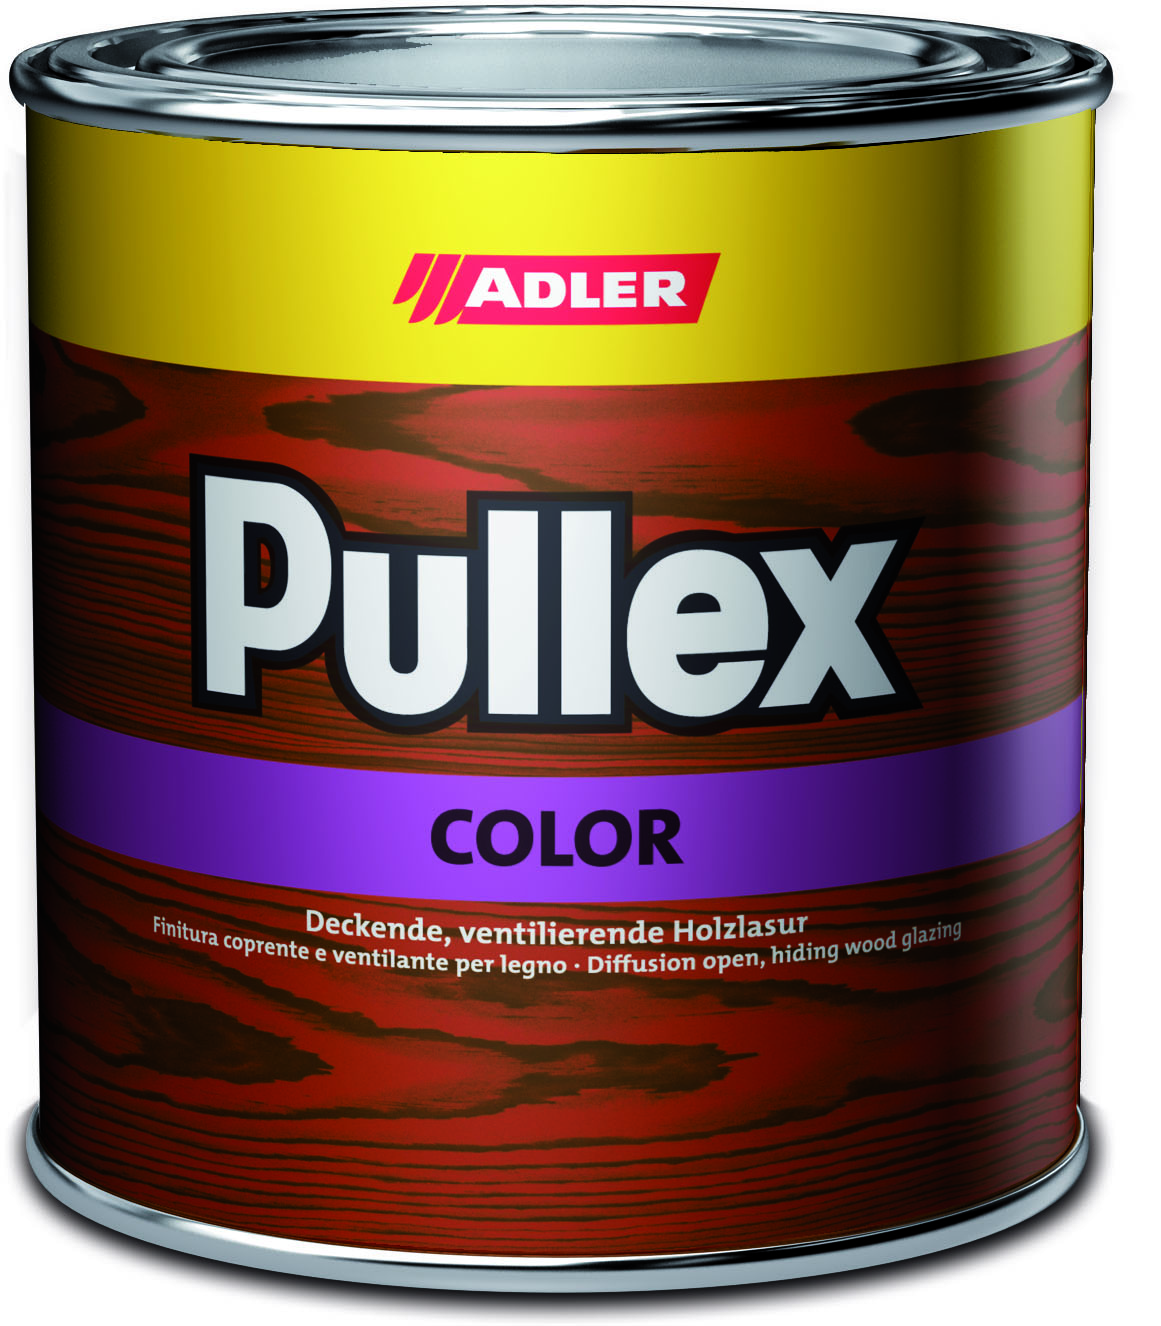 ADLER PULLEX COLOR - Ochranná farba na drevo do exteriéru 2,5 l ral 5013 - kobaltová modrá